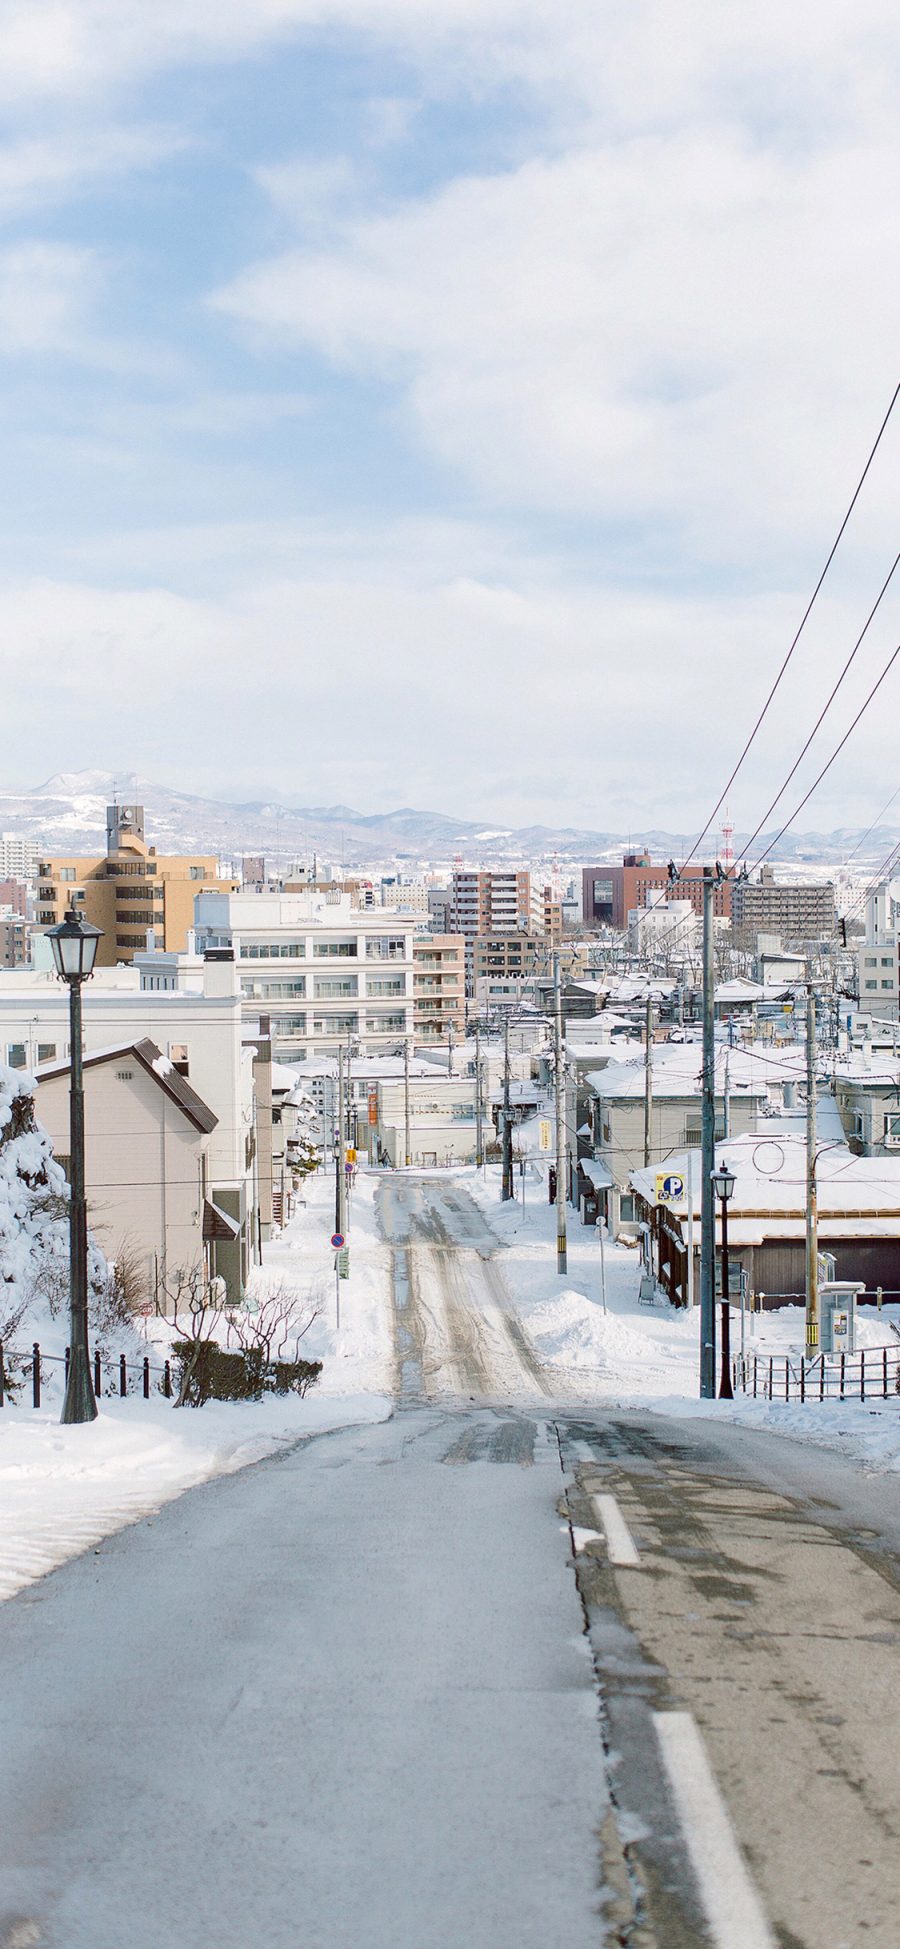 2436 1125 日本北海道街景白雪苹果手机壁纸图片 全面屏手机壁纸